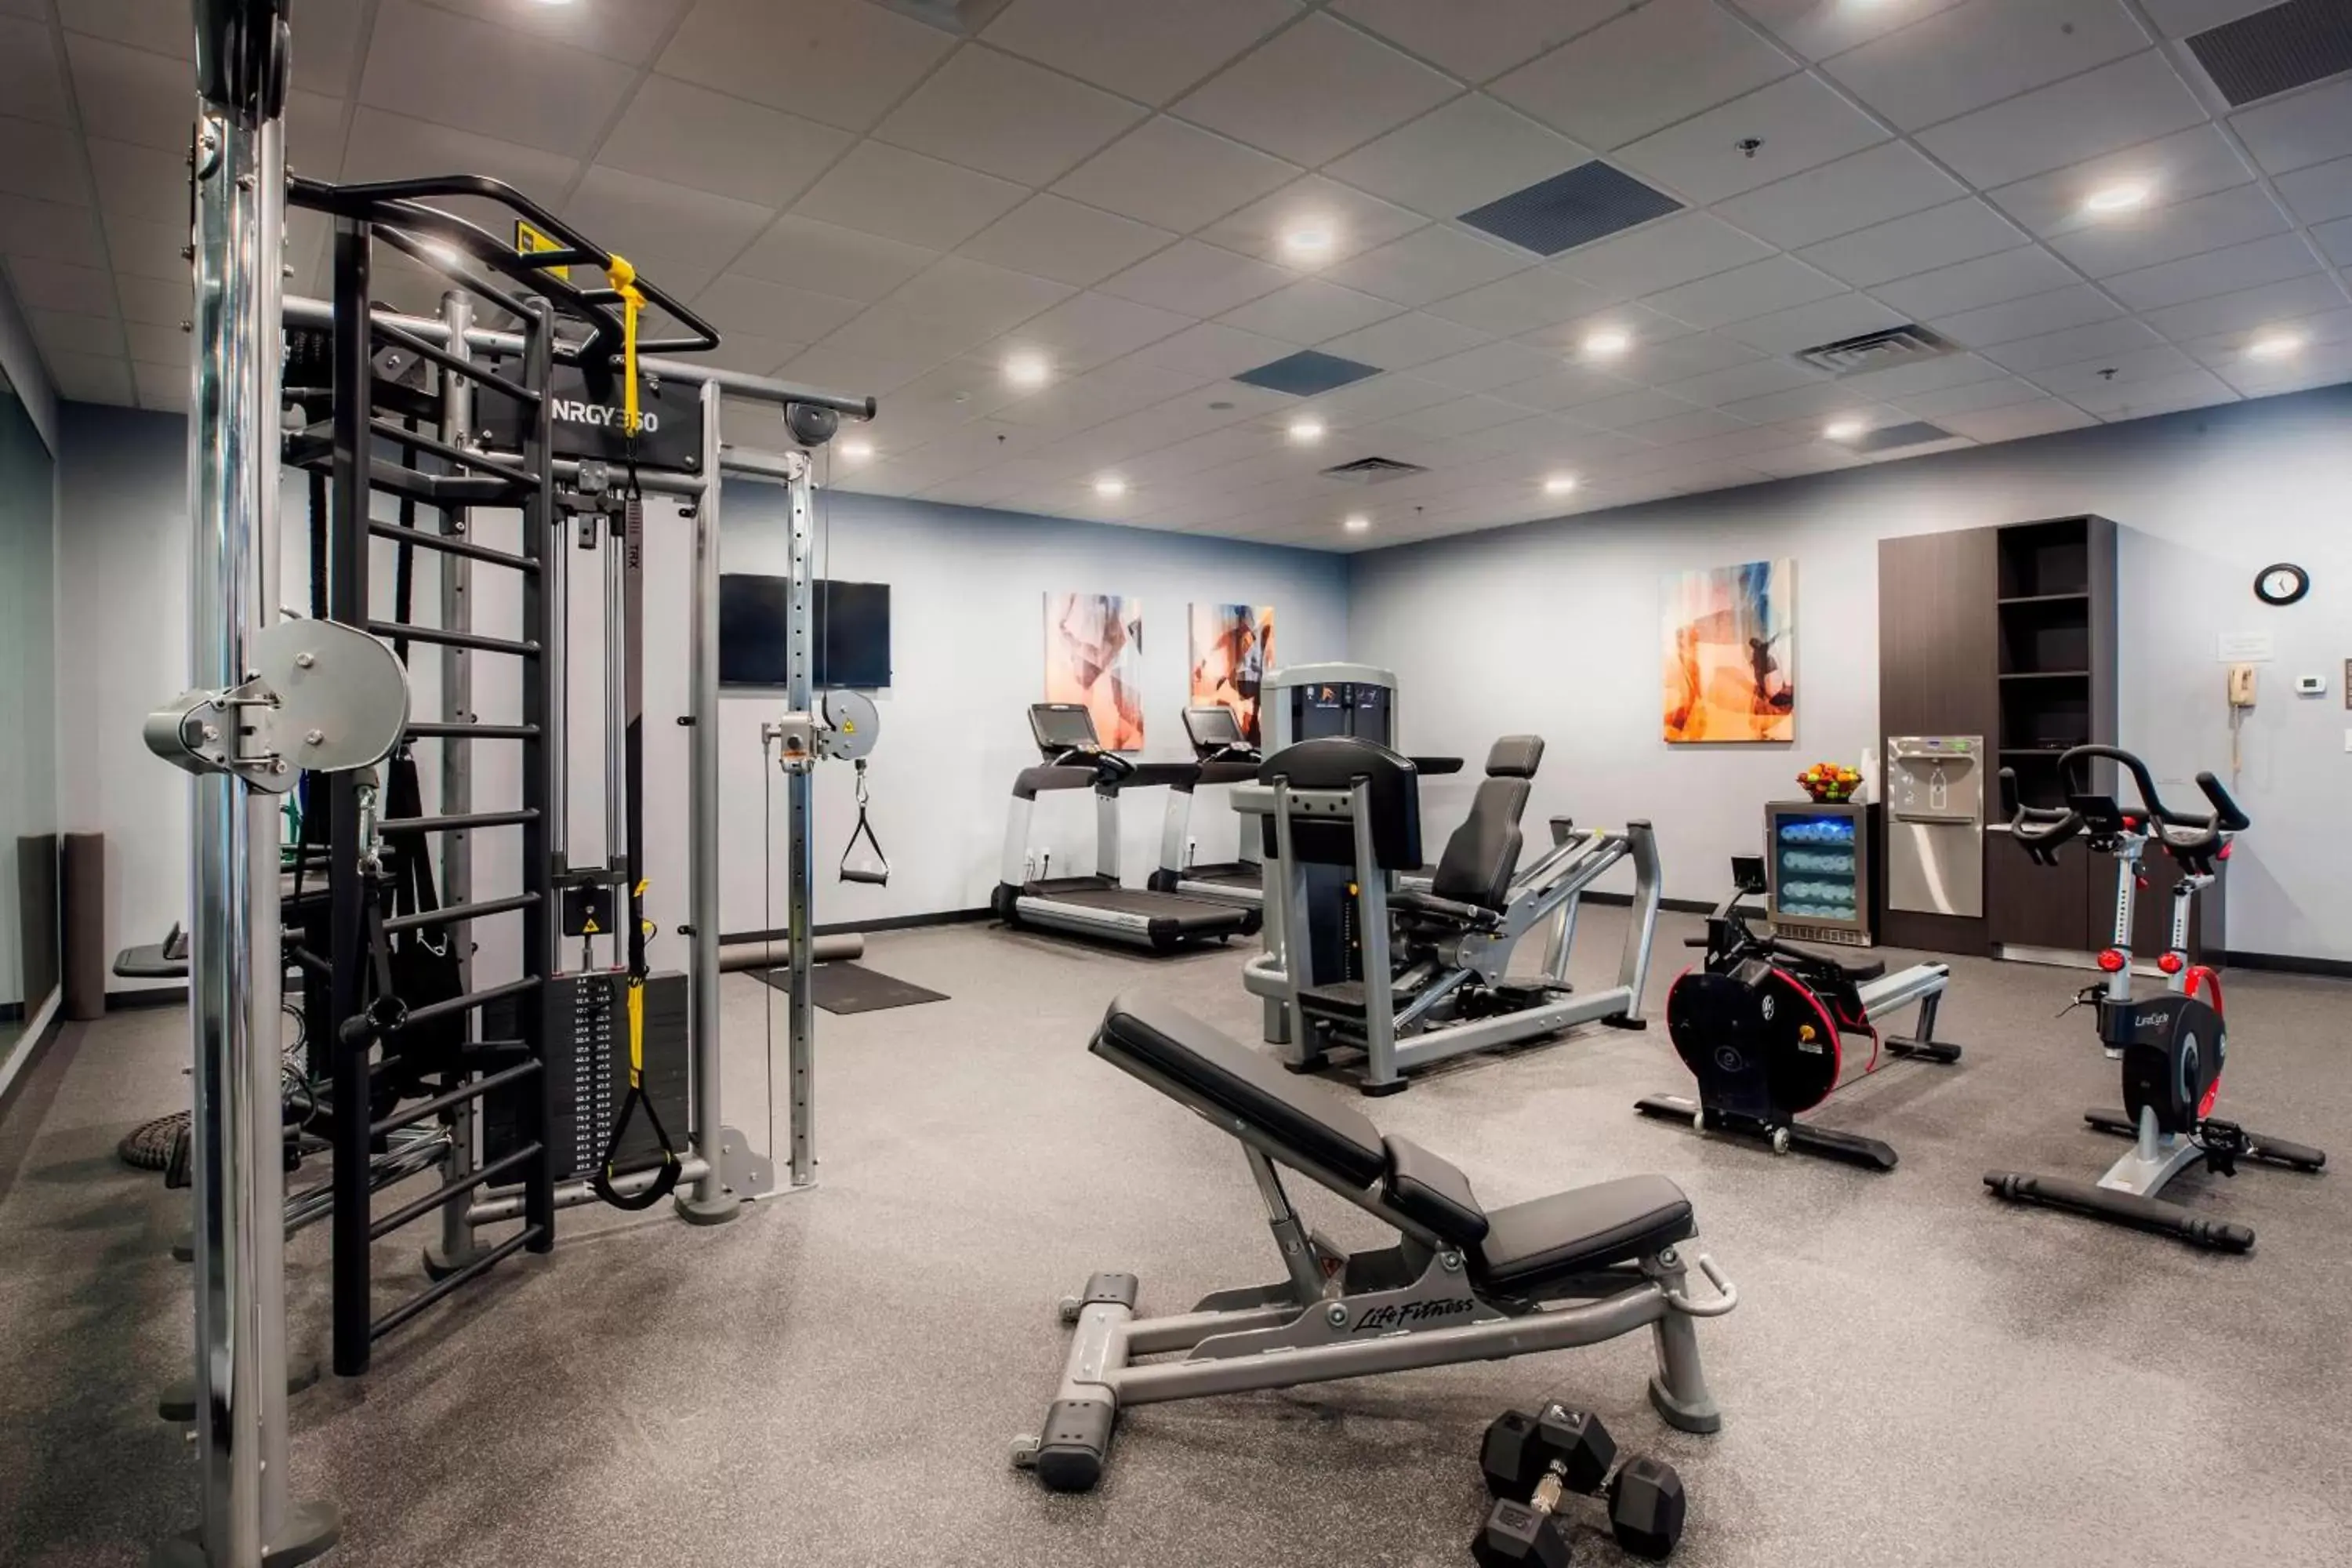 Fitness centre/facilities, Fitness Center/Facilities in Delta Hotels by Marriott Fargo